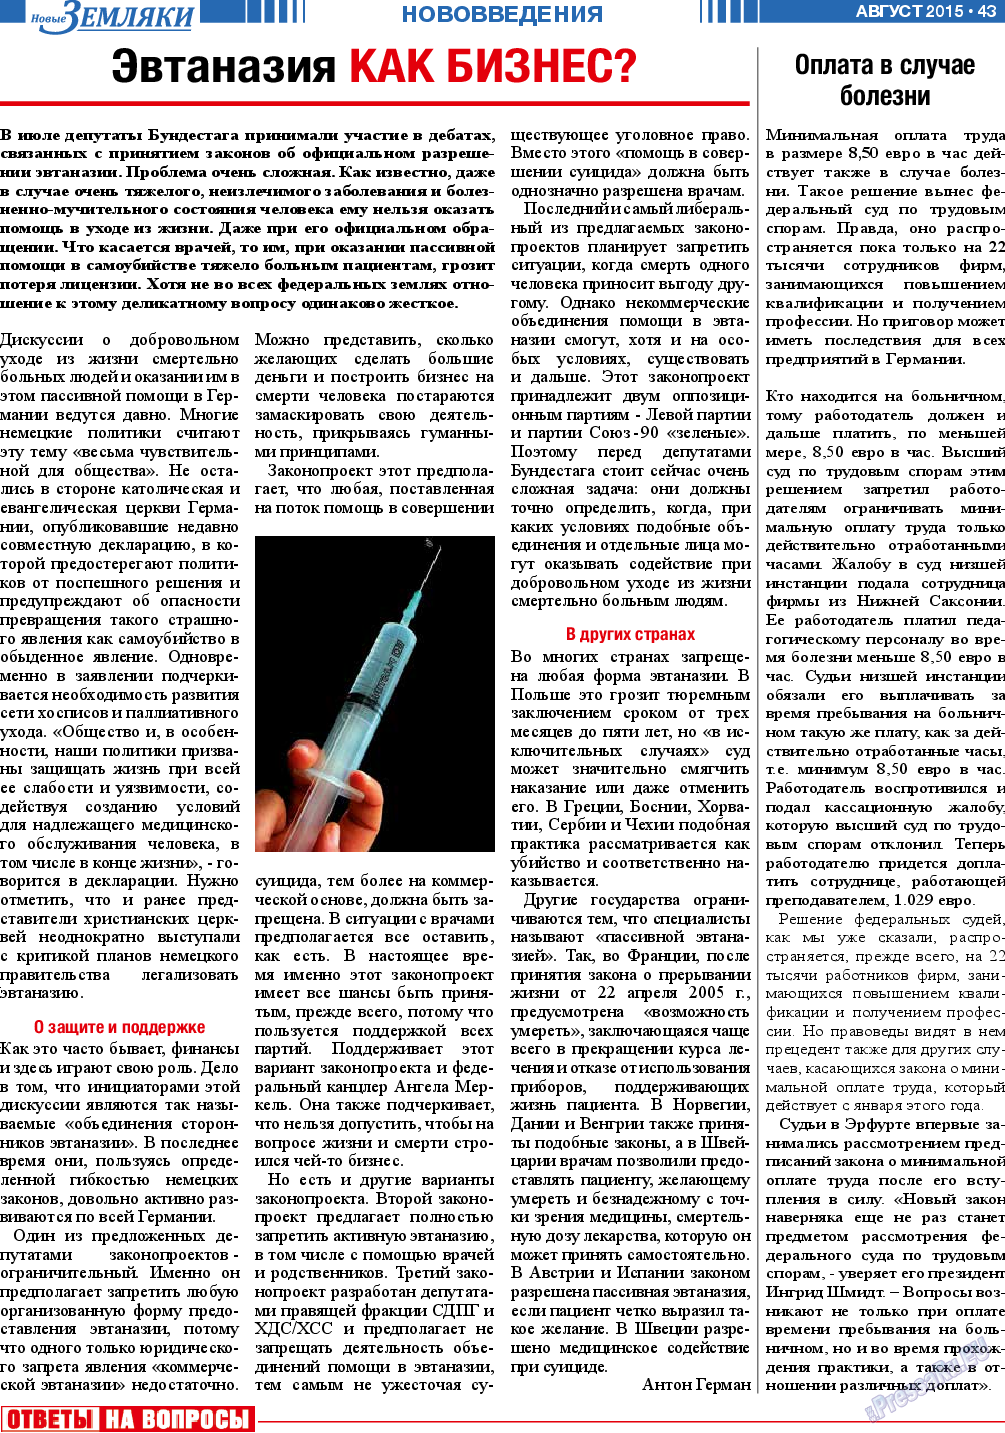 Новые Земляки (газета). 2015 год, номер 8, стр. 43